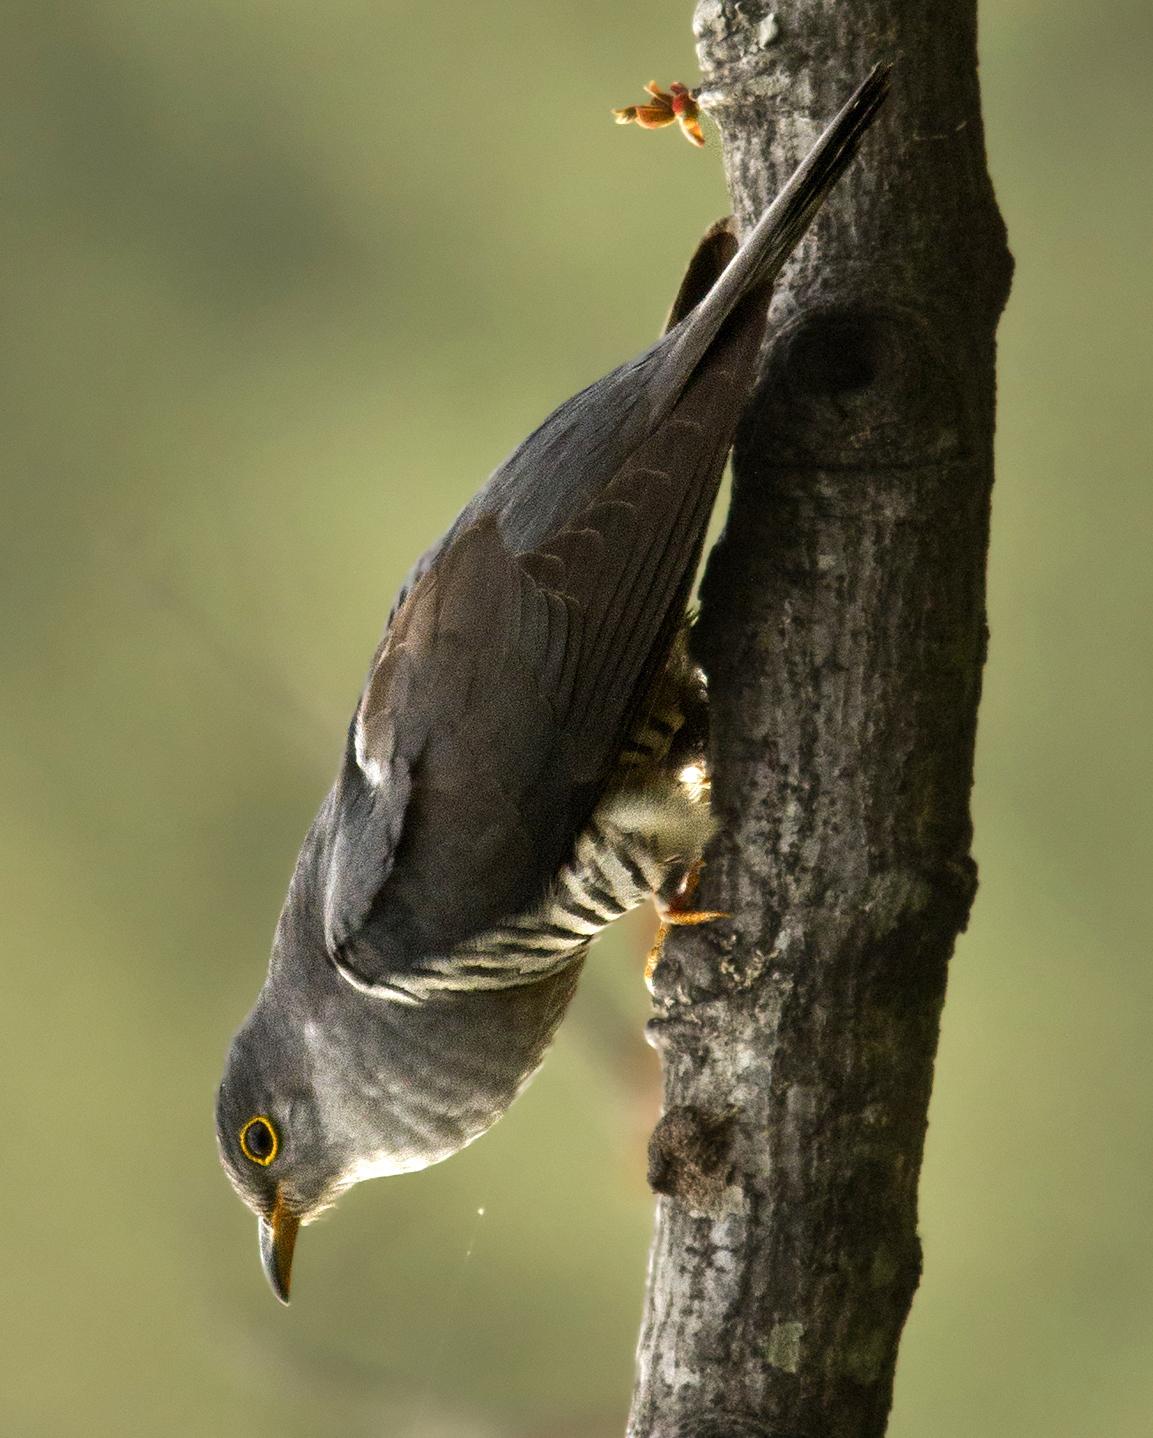 Himalayan Cuckoo Photo by Garima Bhatia